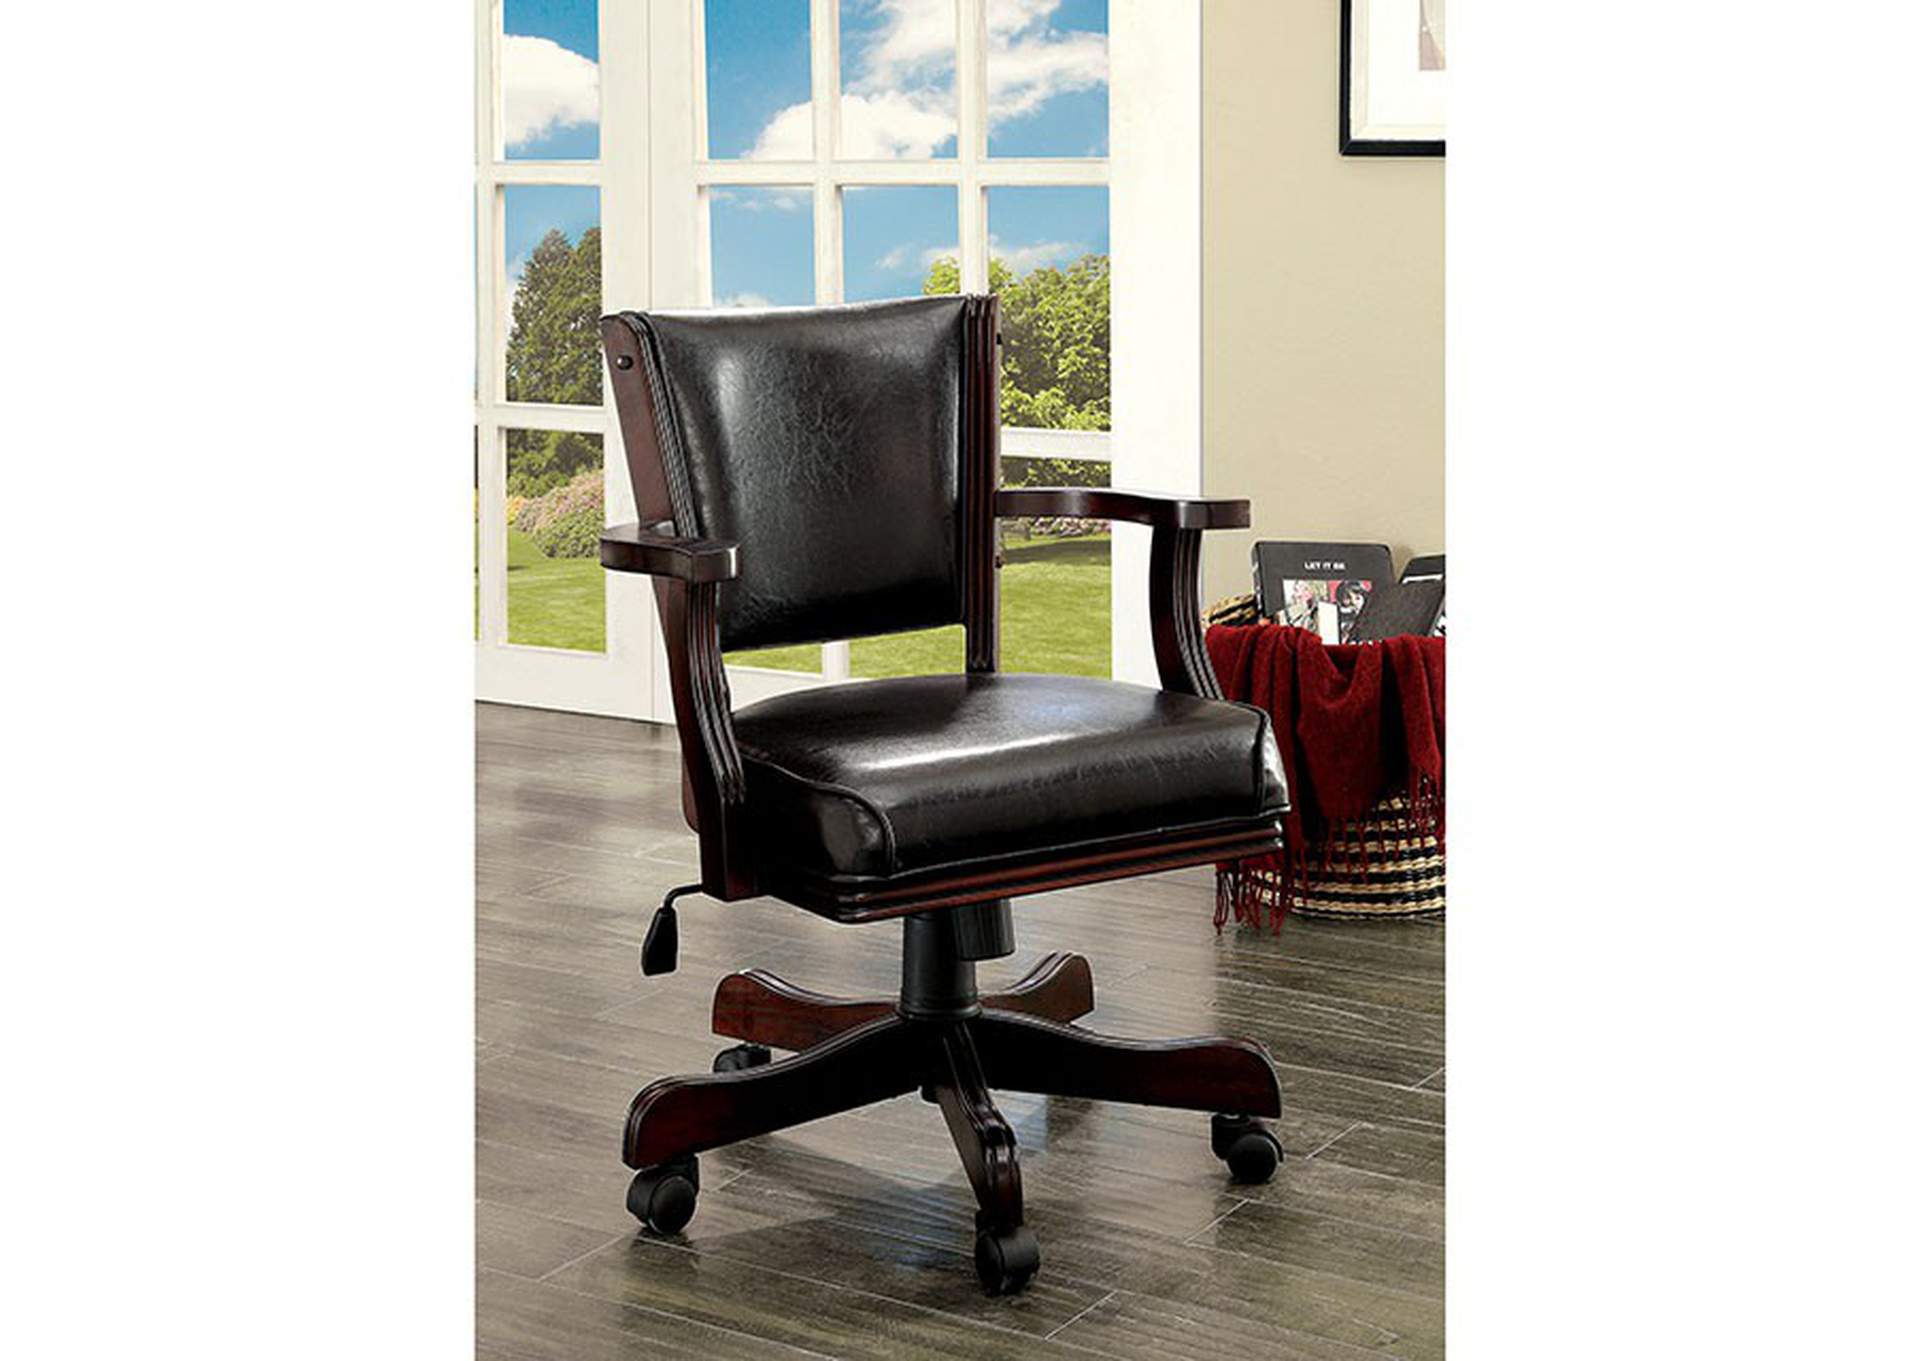 Rowan Arm Chair,Furniture of America